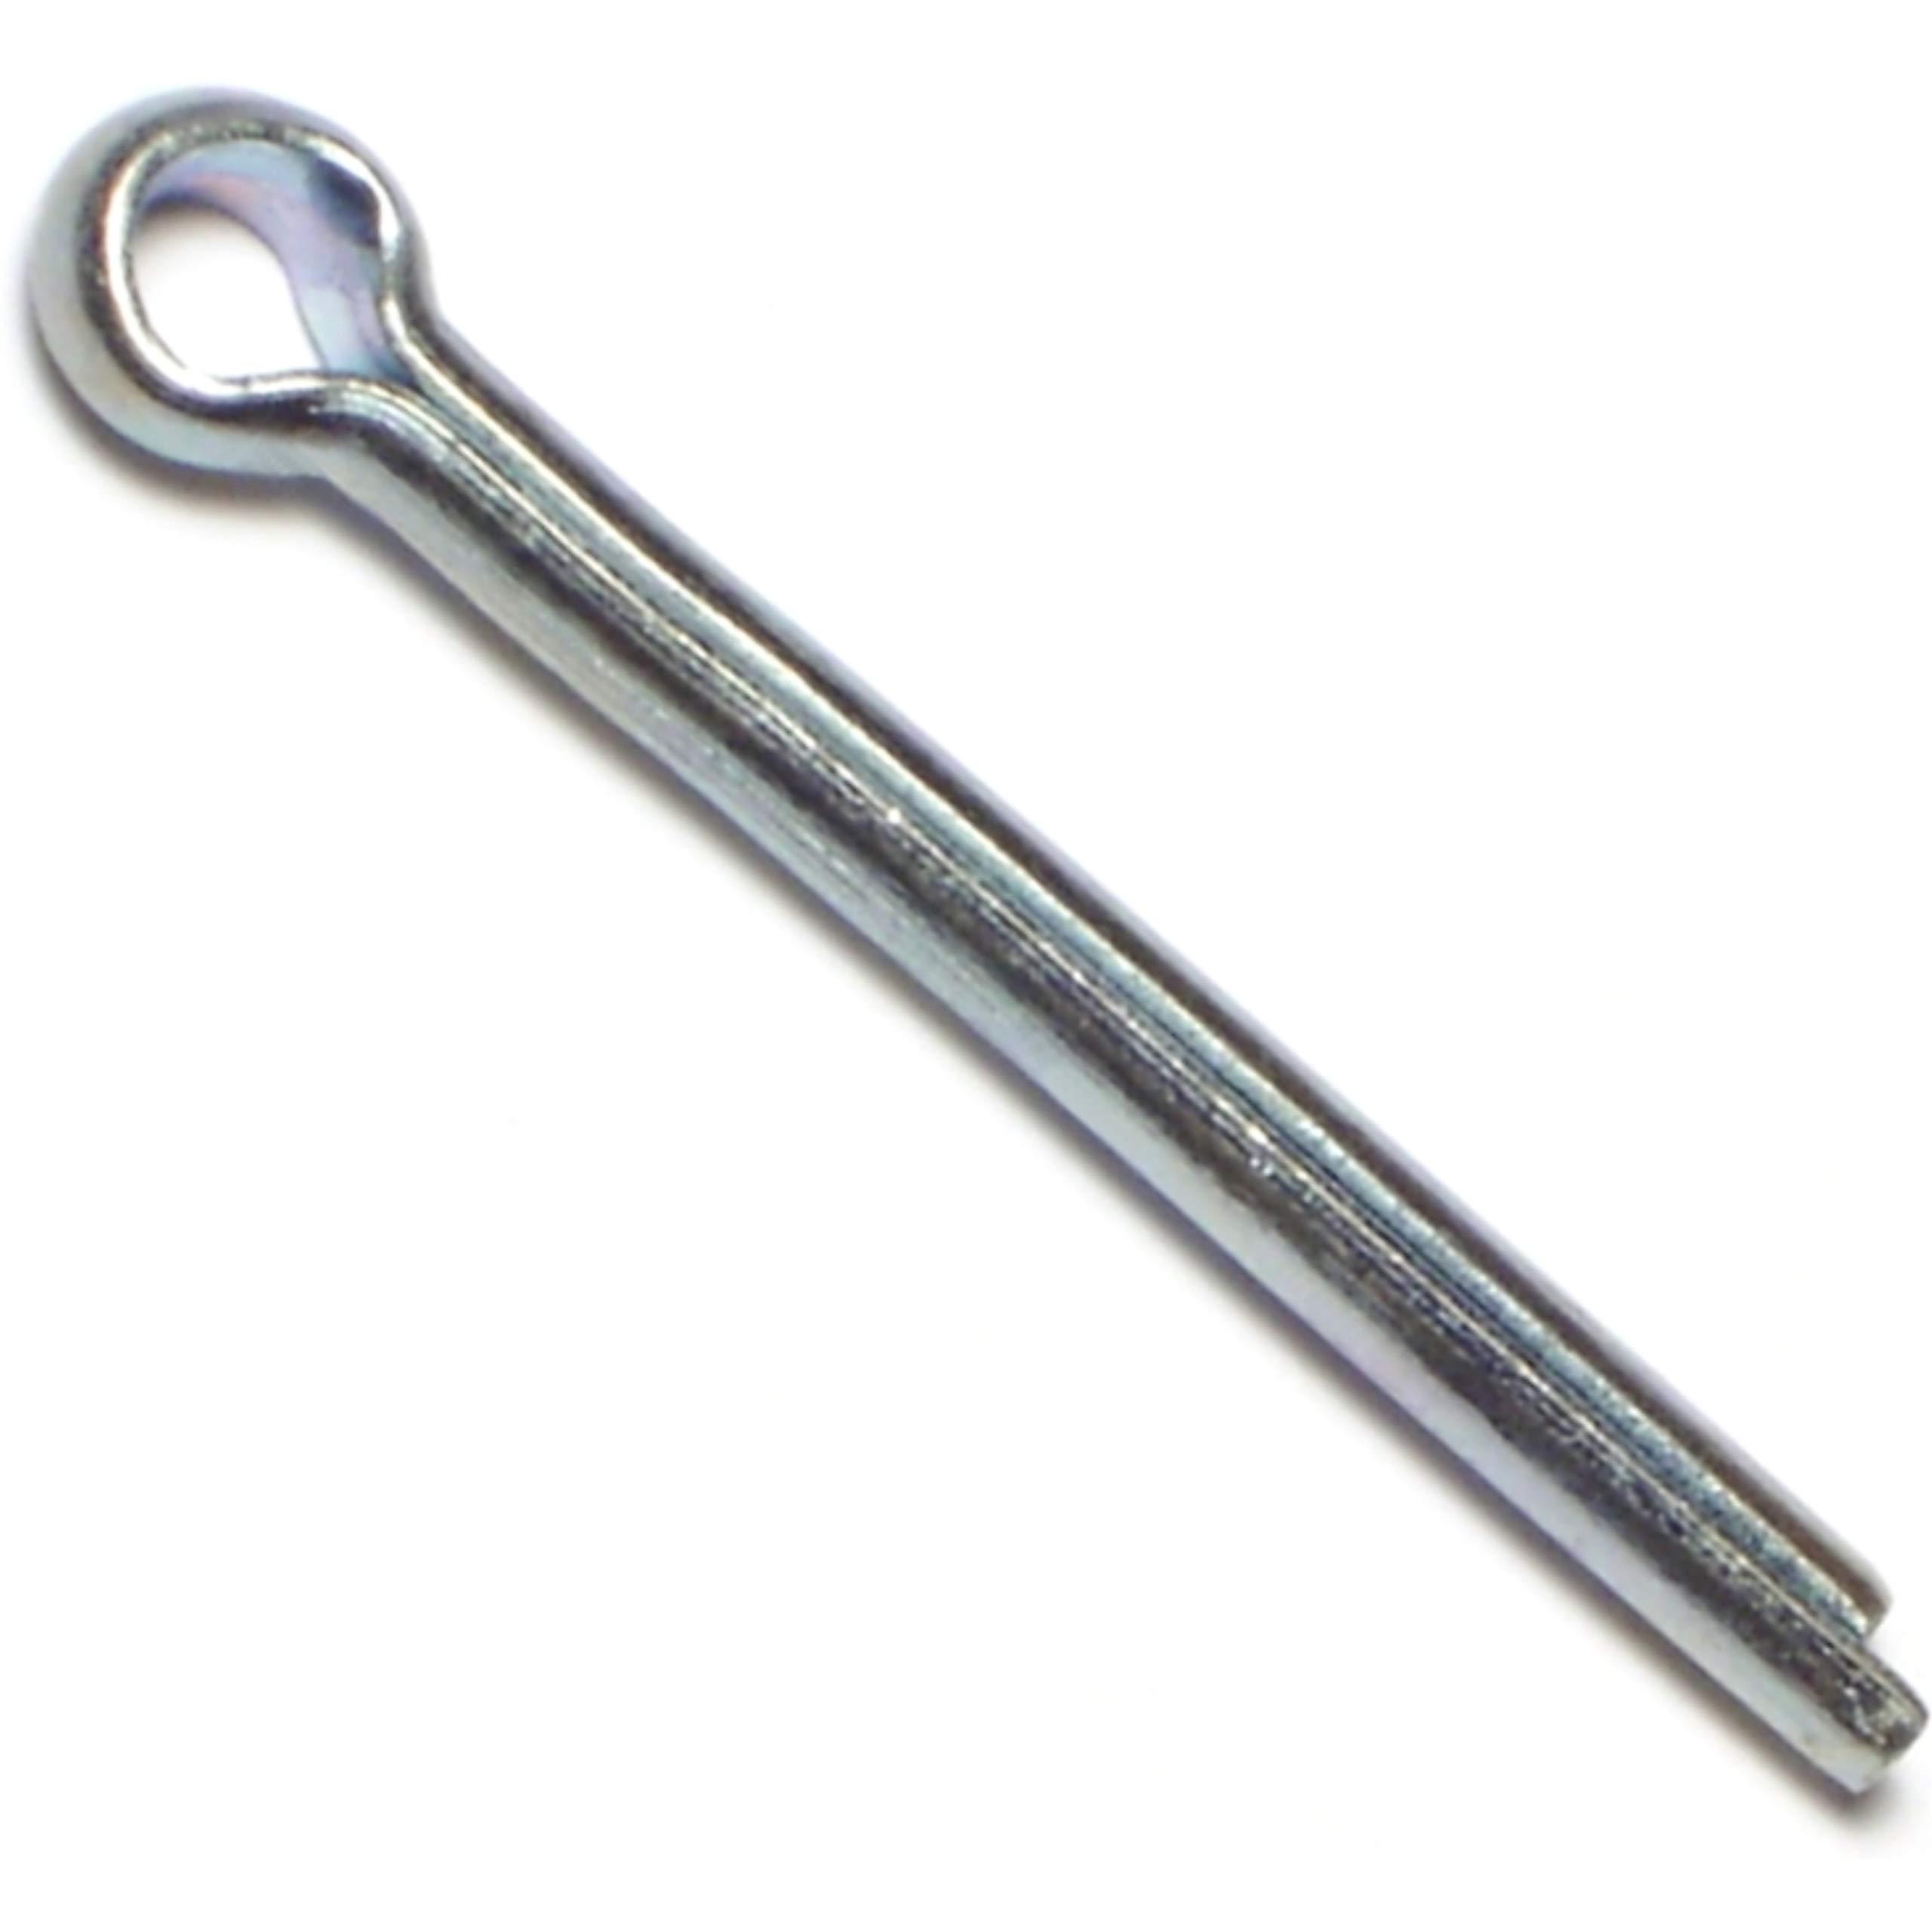 hard-to-find fastener 014973271176 cotter pins, 5mm x 45mm, piece-15